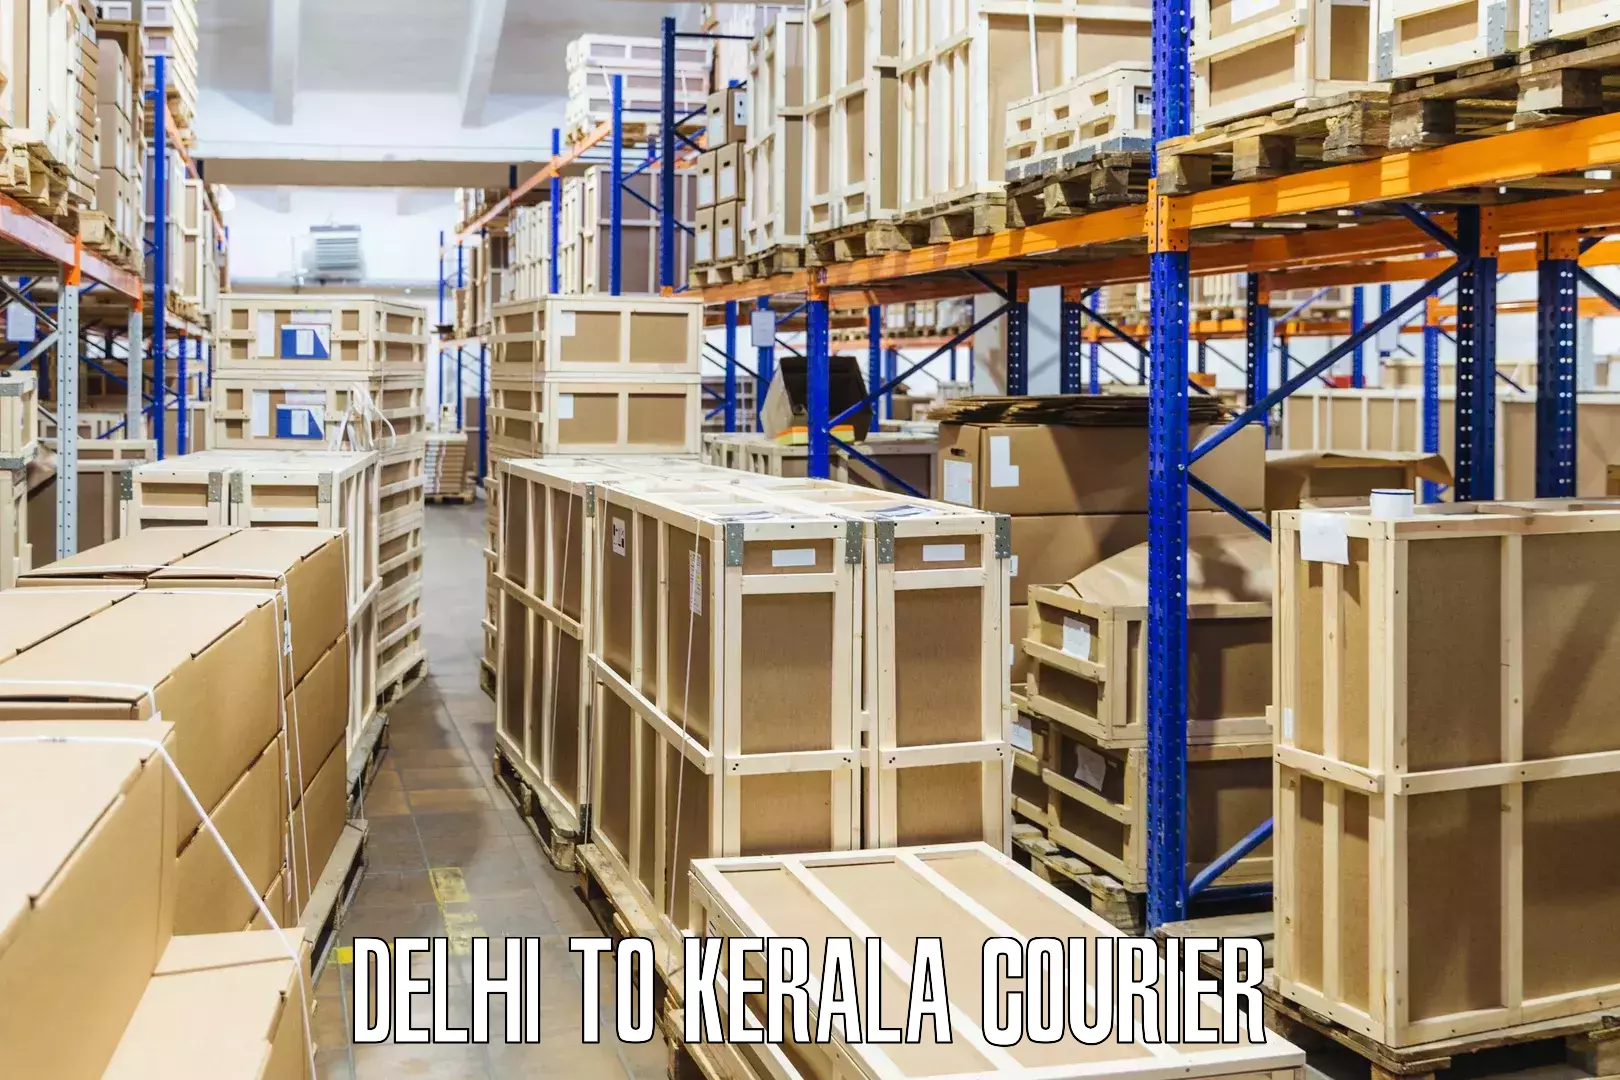 Courier rate comparison in Delhi to Calicut